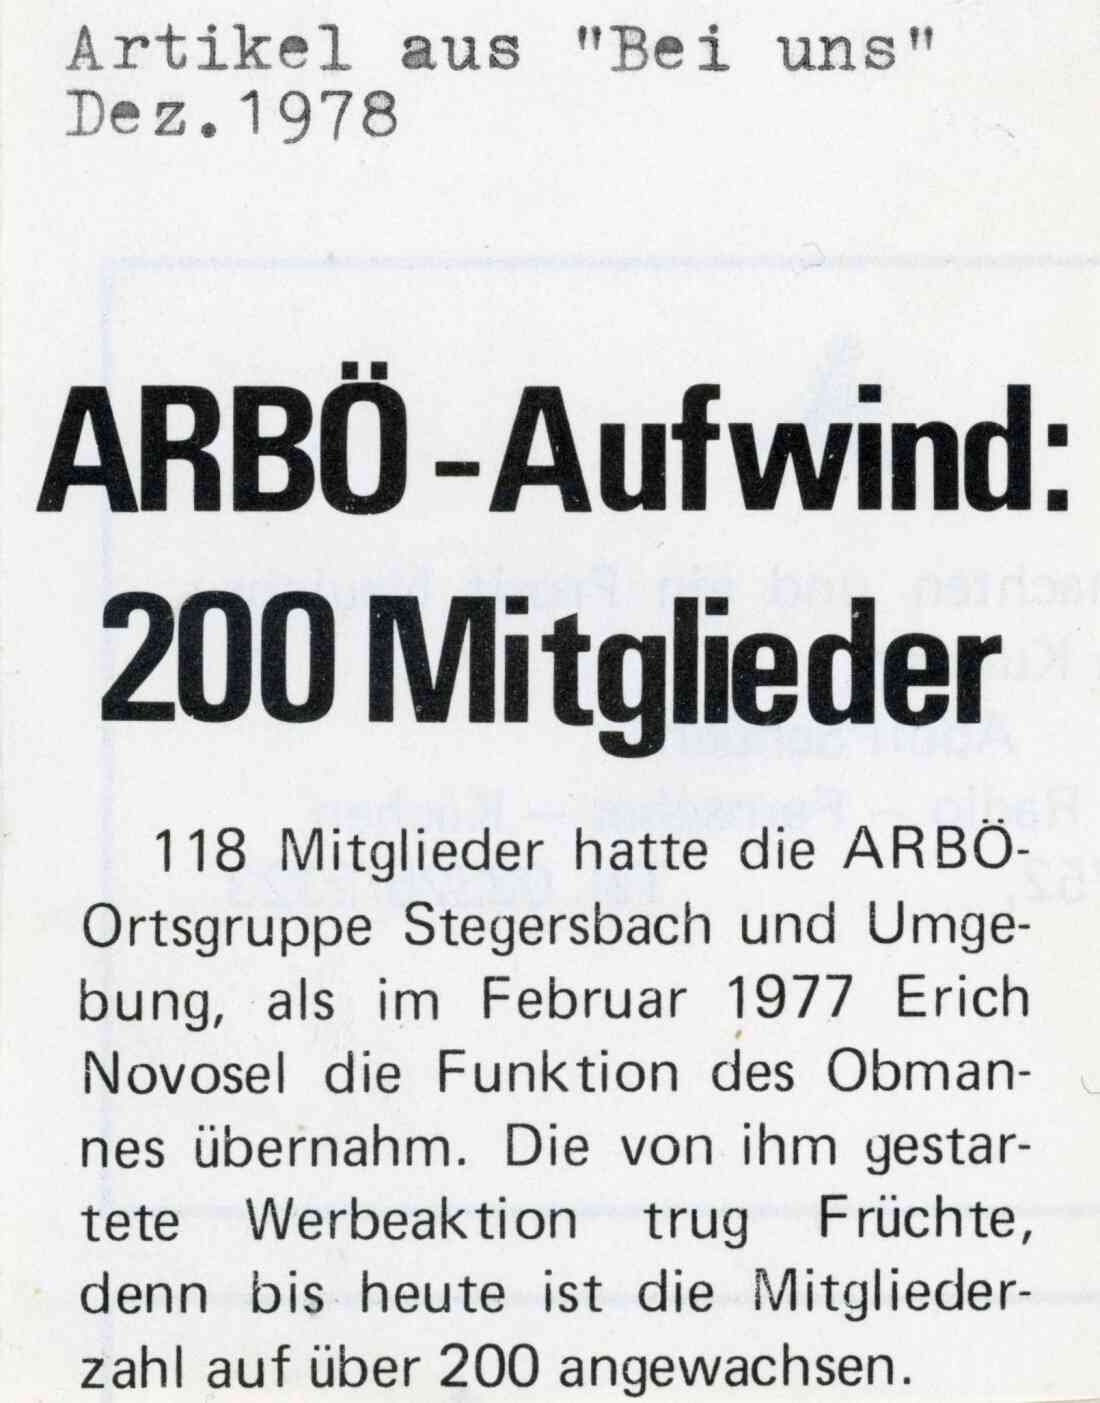 Zeitungsartikel über ARBÖ Mitglieder in "Bei uns" vom Dezember 1978